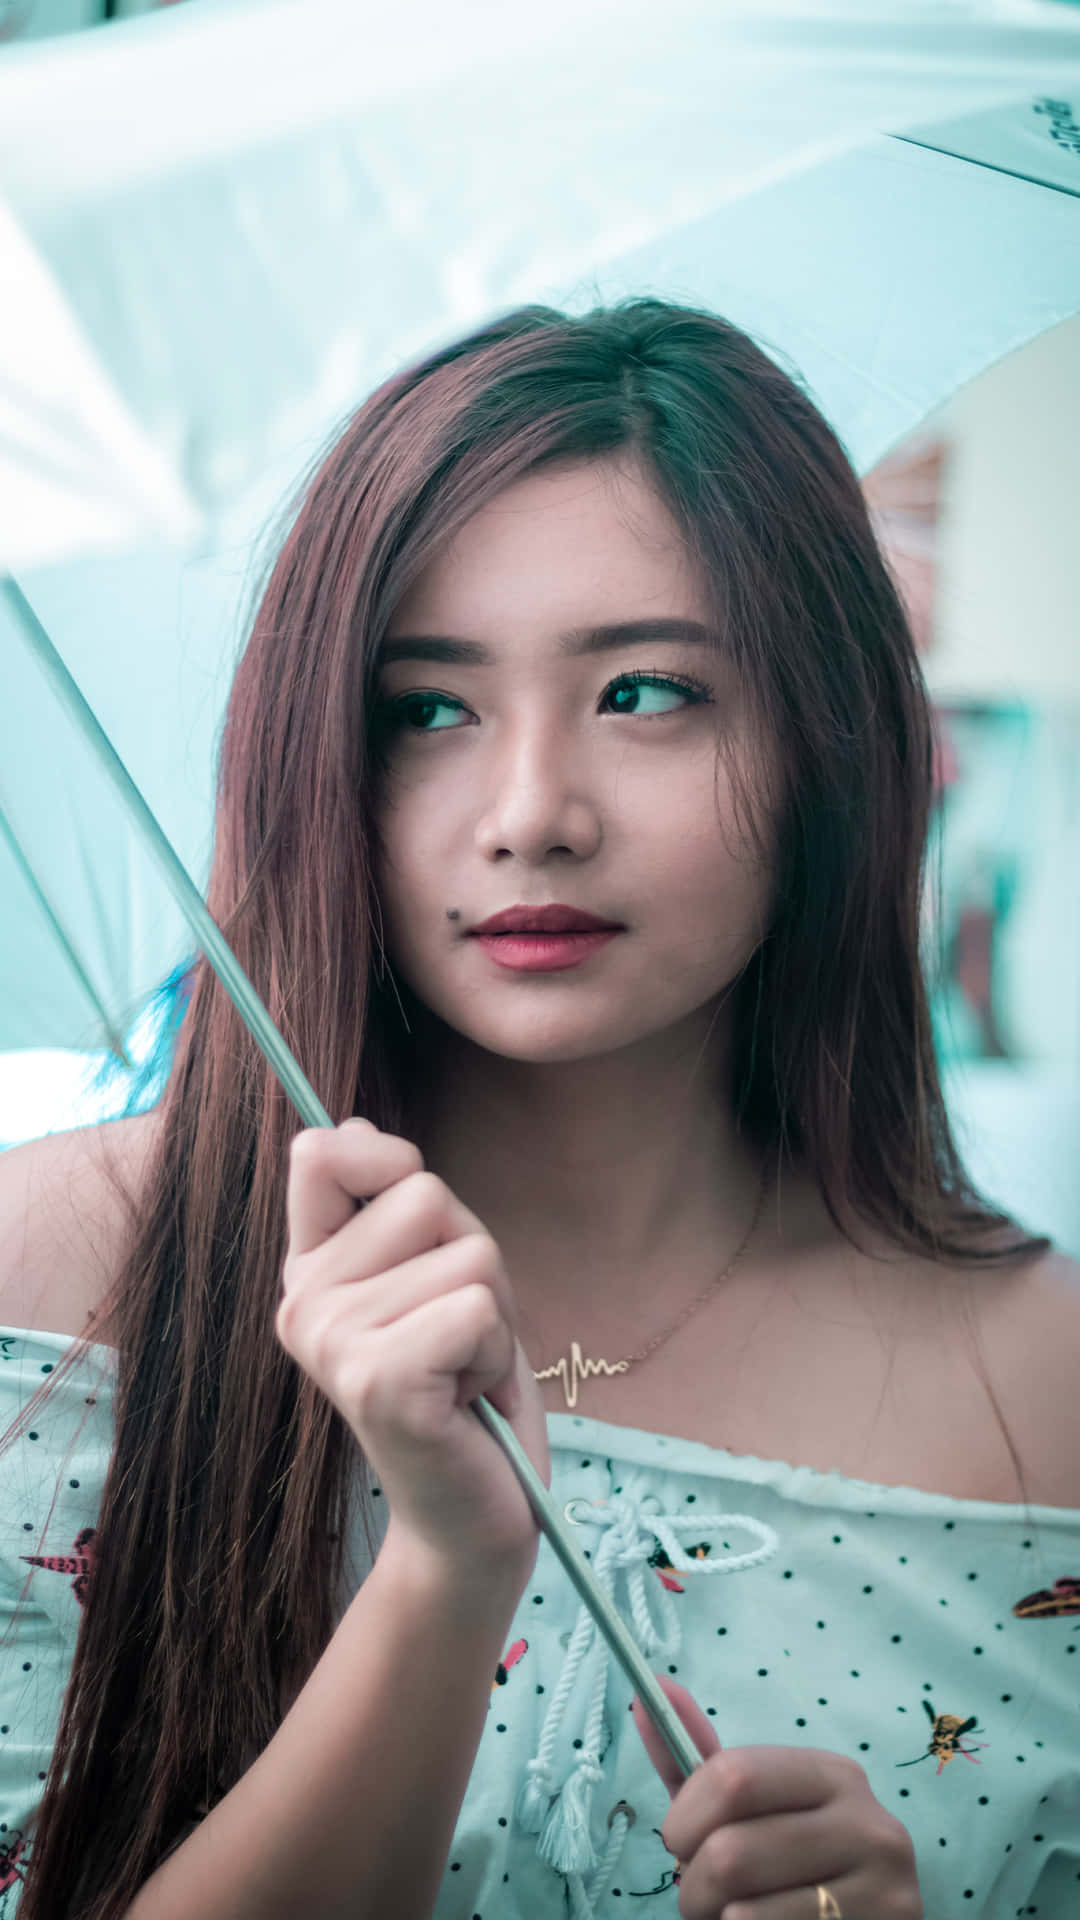 Portrait Photography Cute Asian Model Umbrella Wallpaper